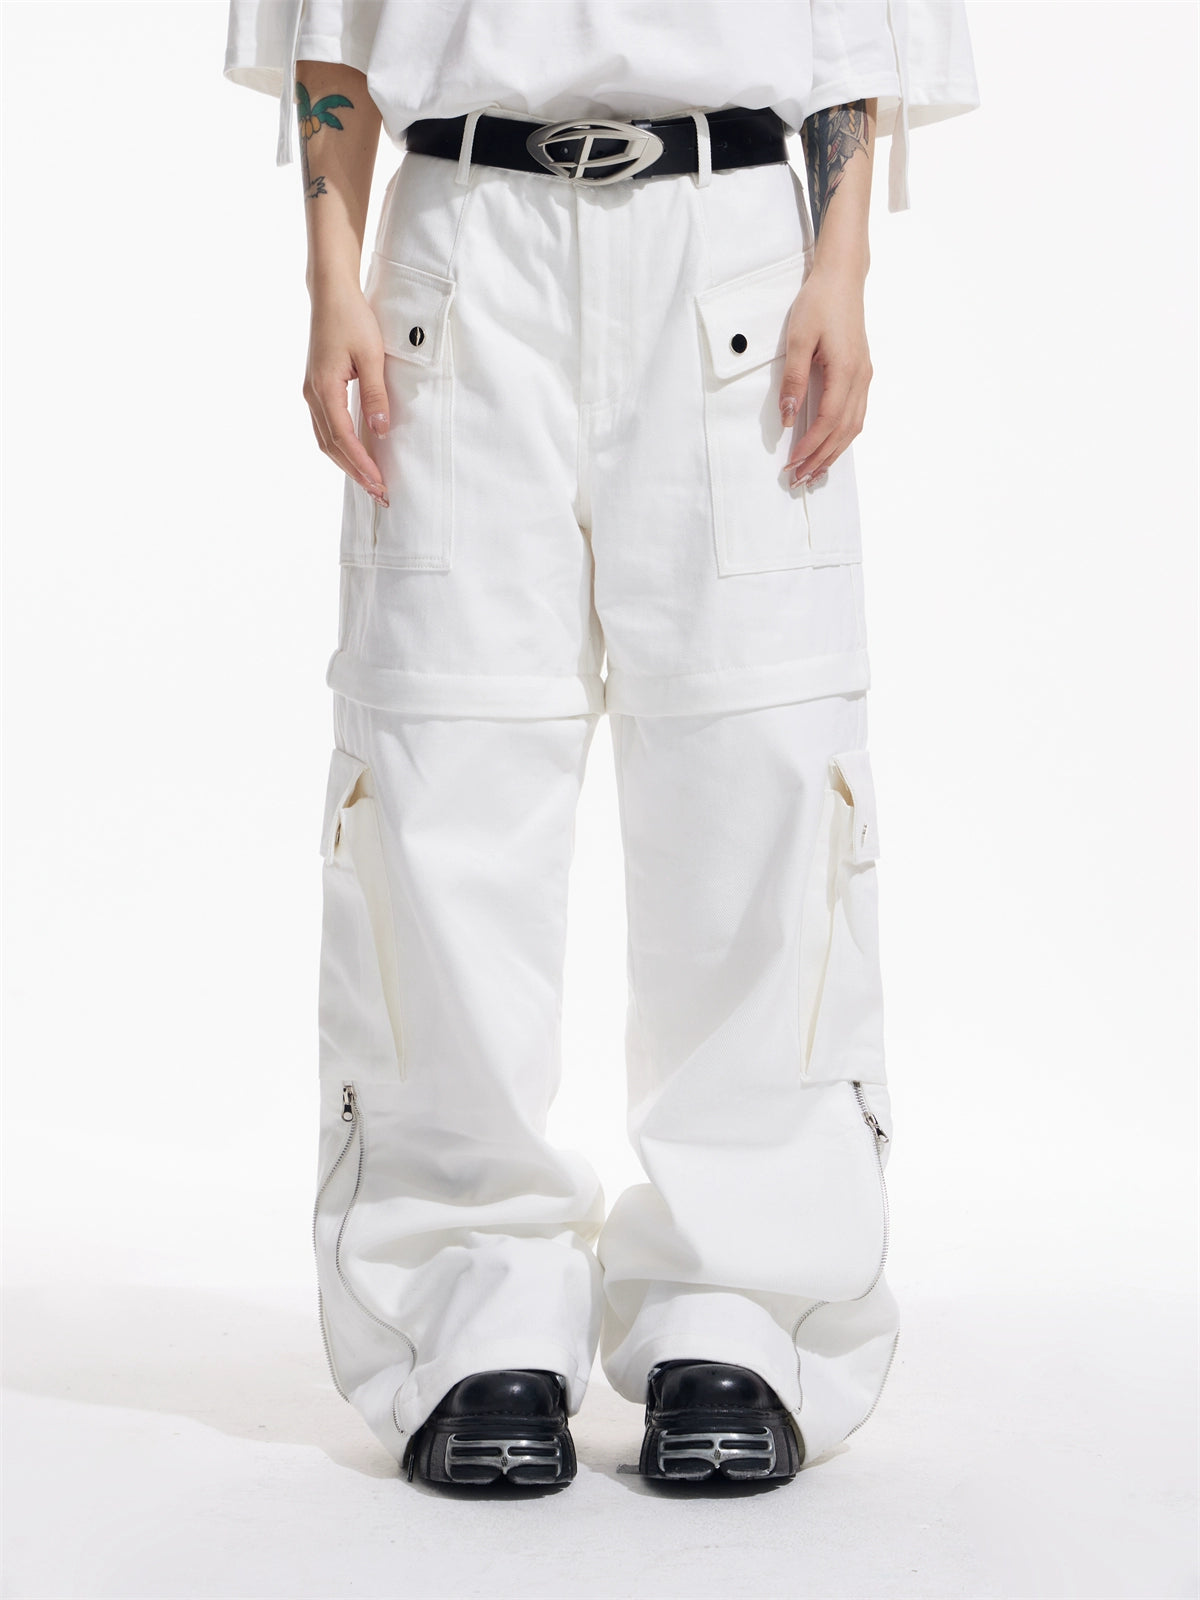 Yapi High Street - Pantalones de trabajo con cremallera personalizados